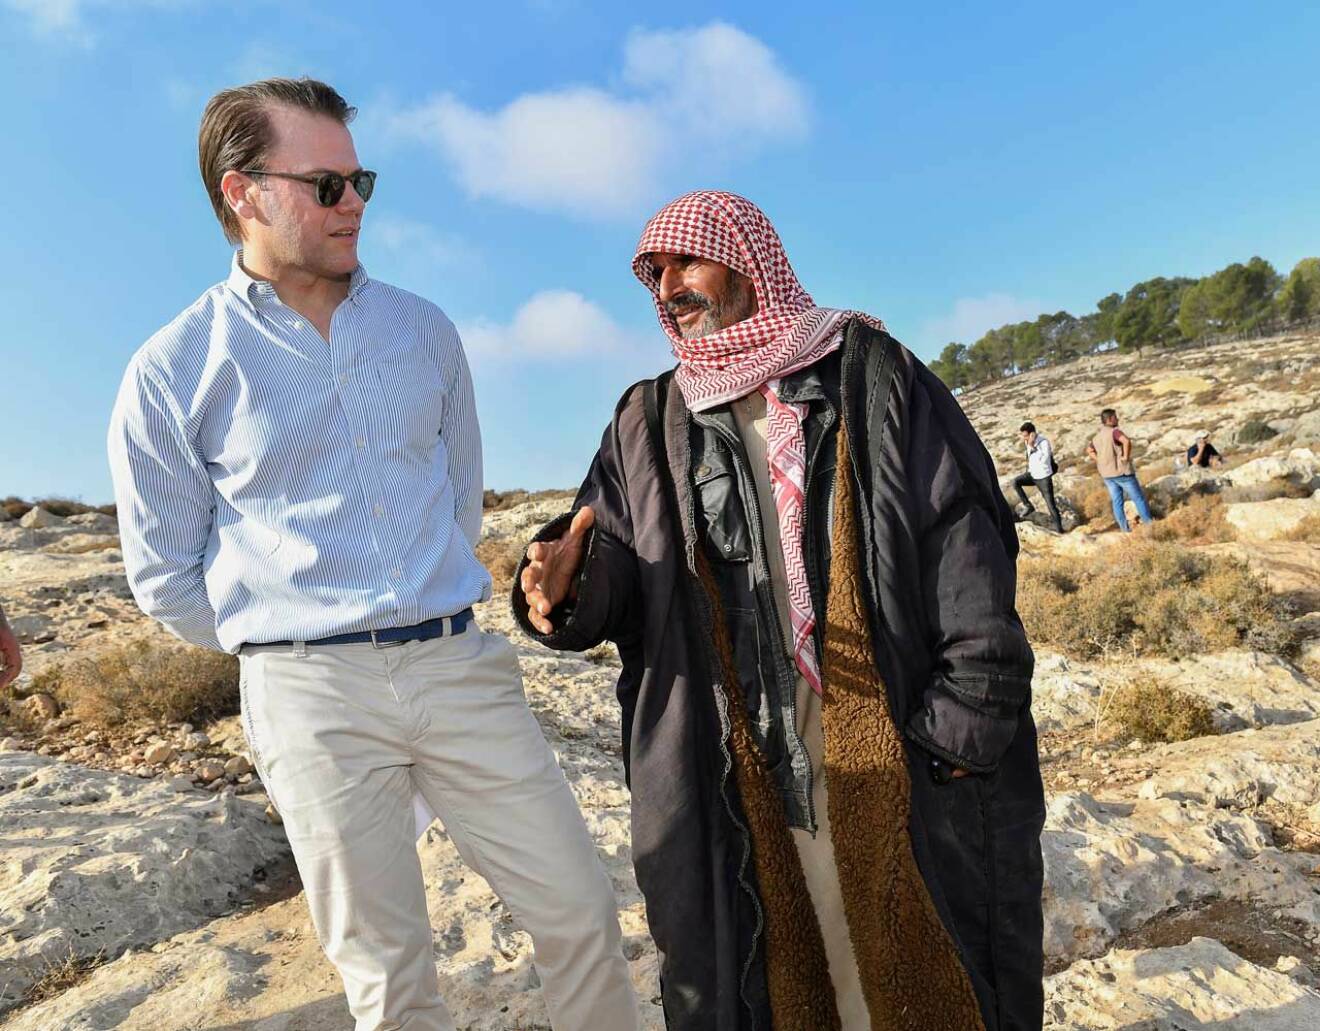 Prins Daniel och fåraherden, ett fint möte under kronprinsessparets officiella besök i Jordanien.